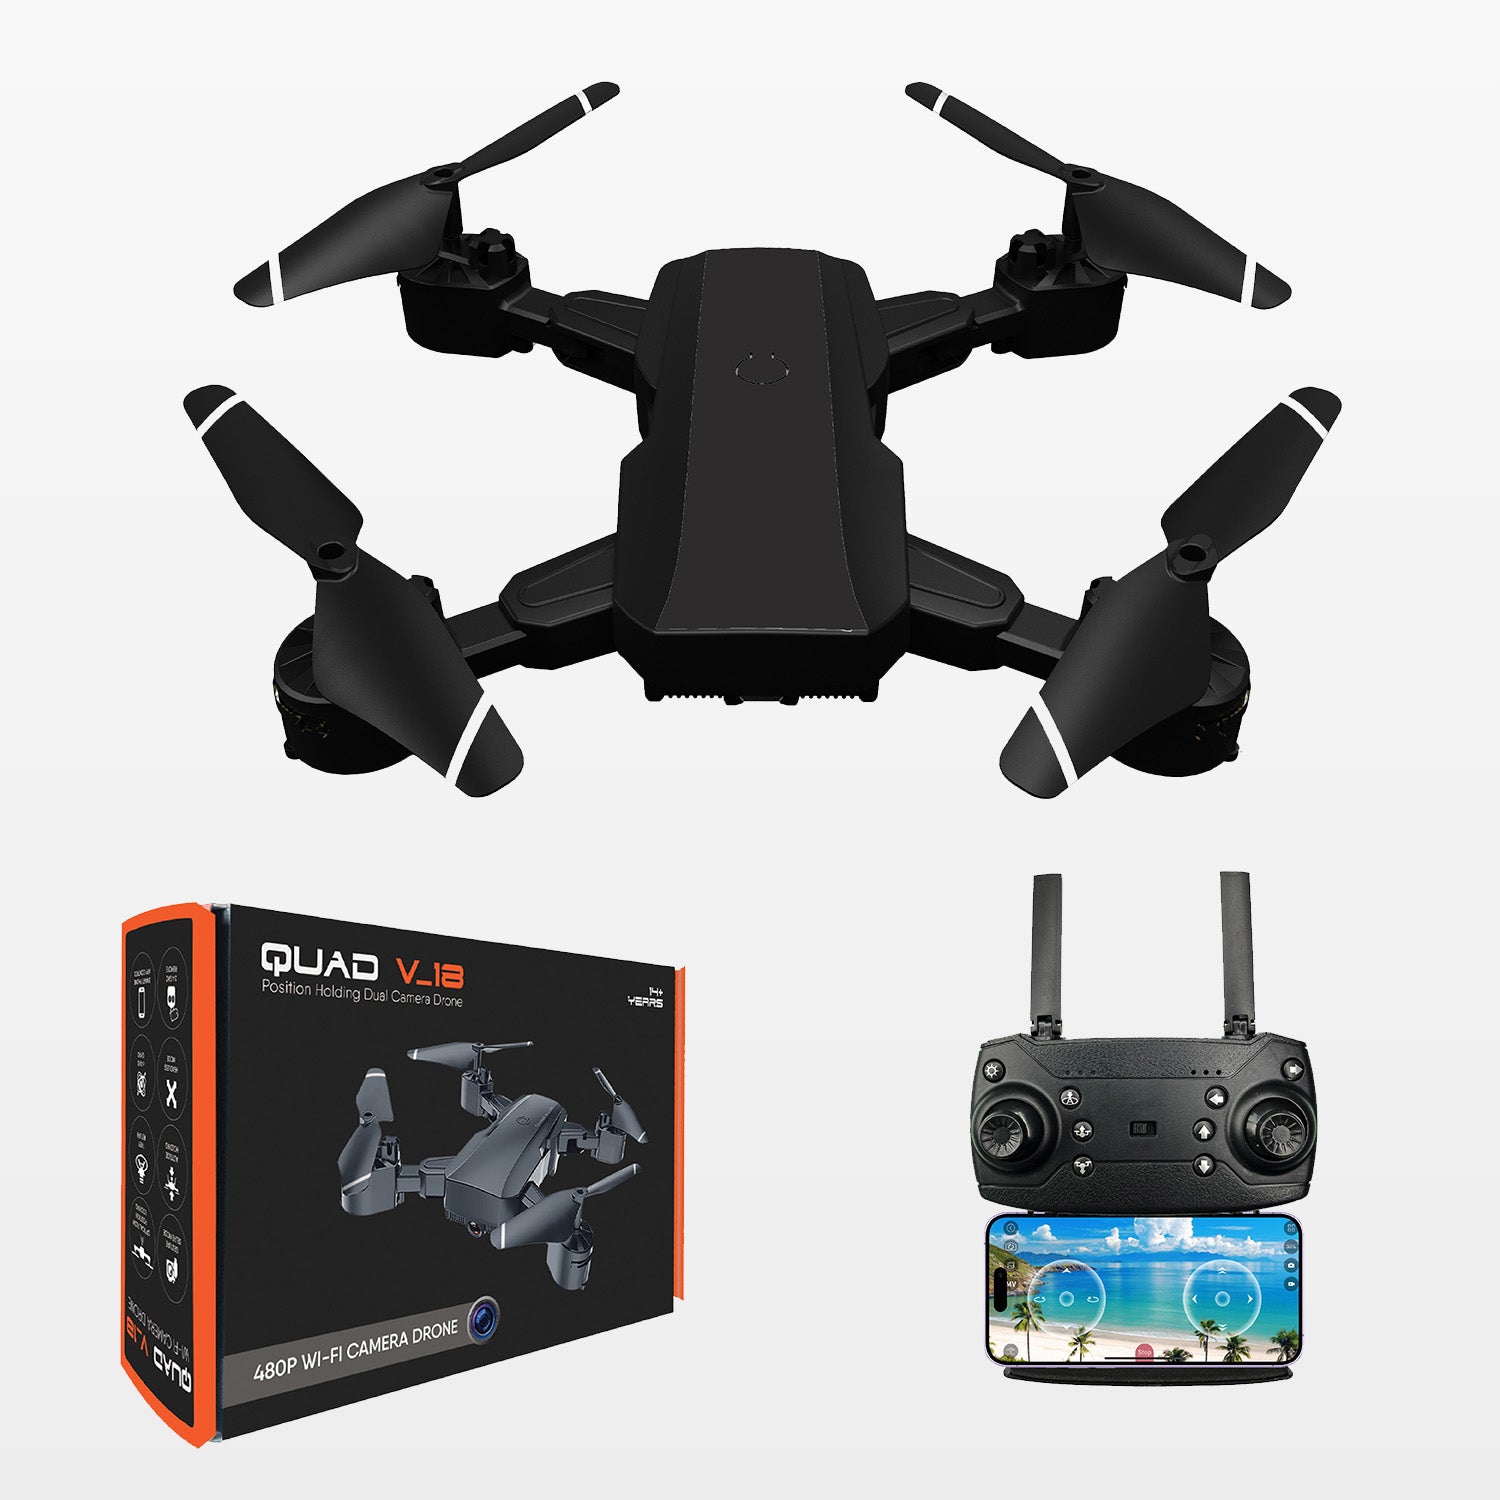 QUAD V 18 BLACK | WiFi 480P FPV Dual Camera | Position Locking Drone